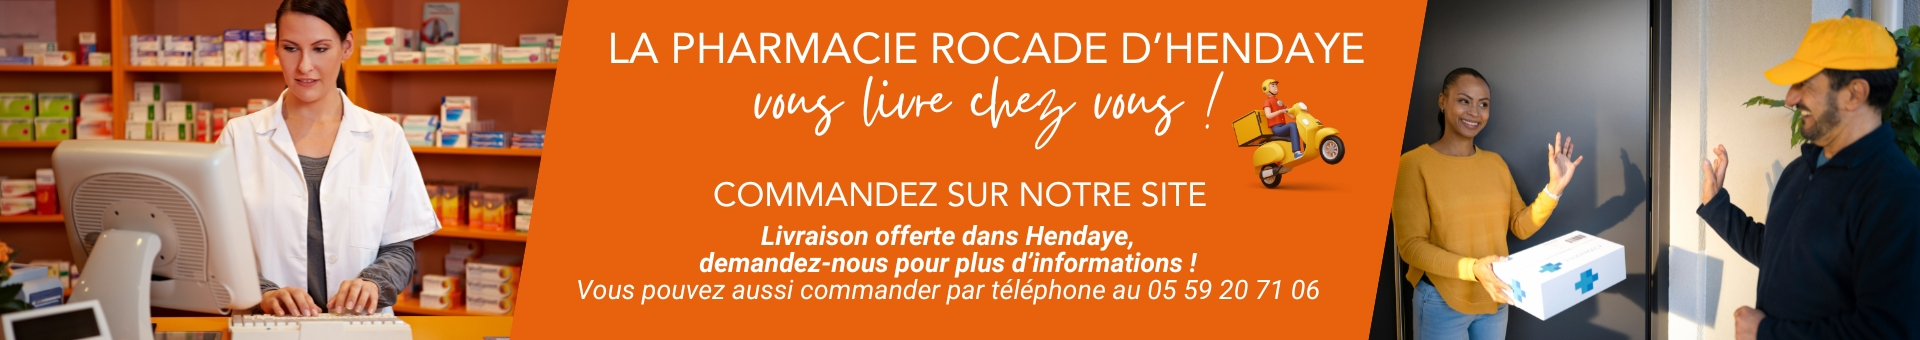 Pharmacie Rocade Hendaye,Hendaye